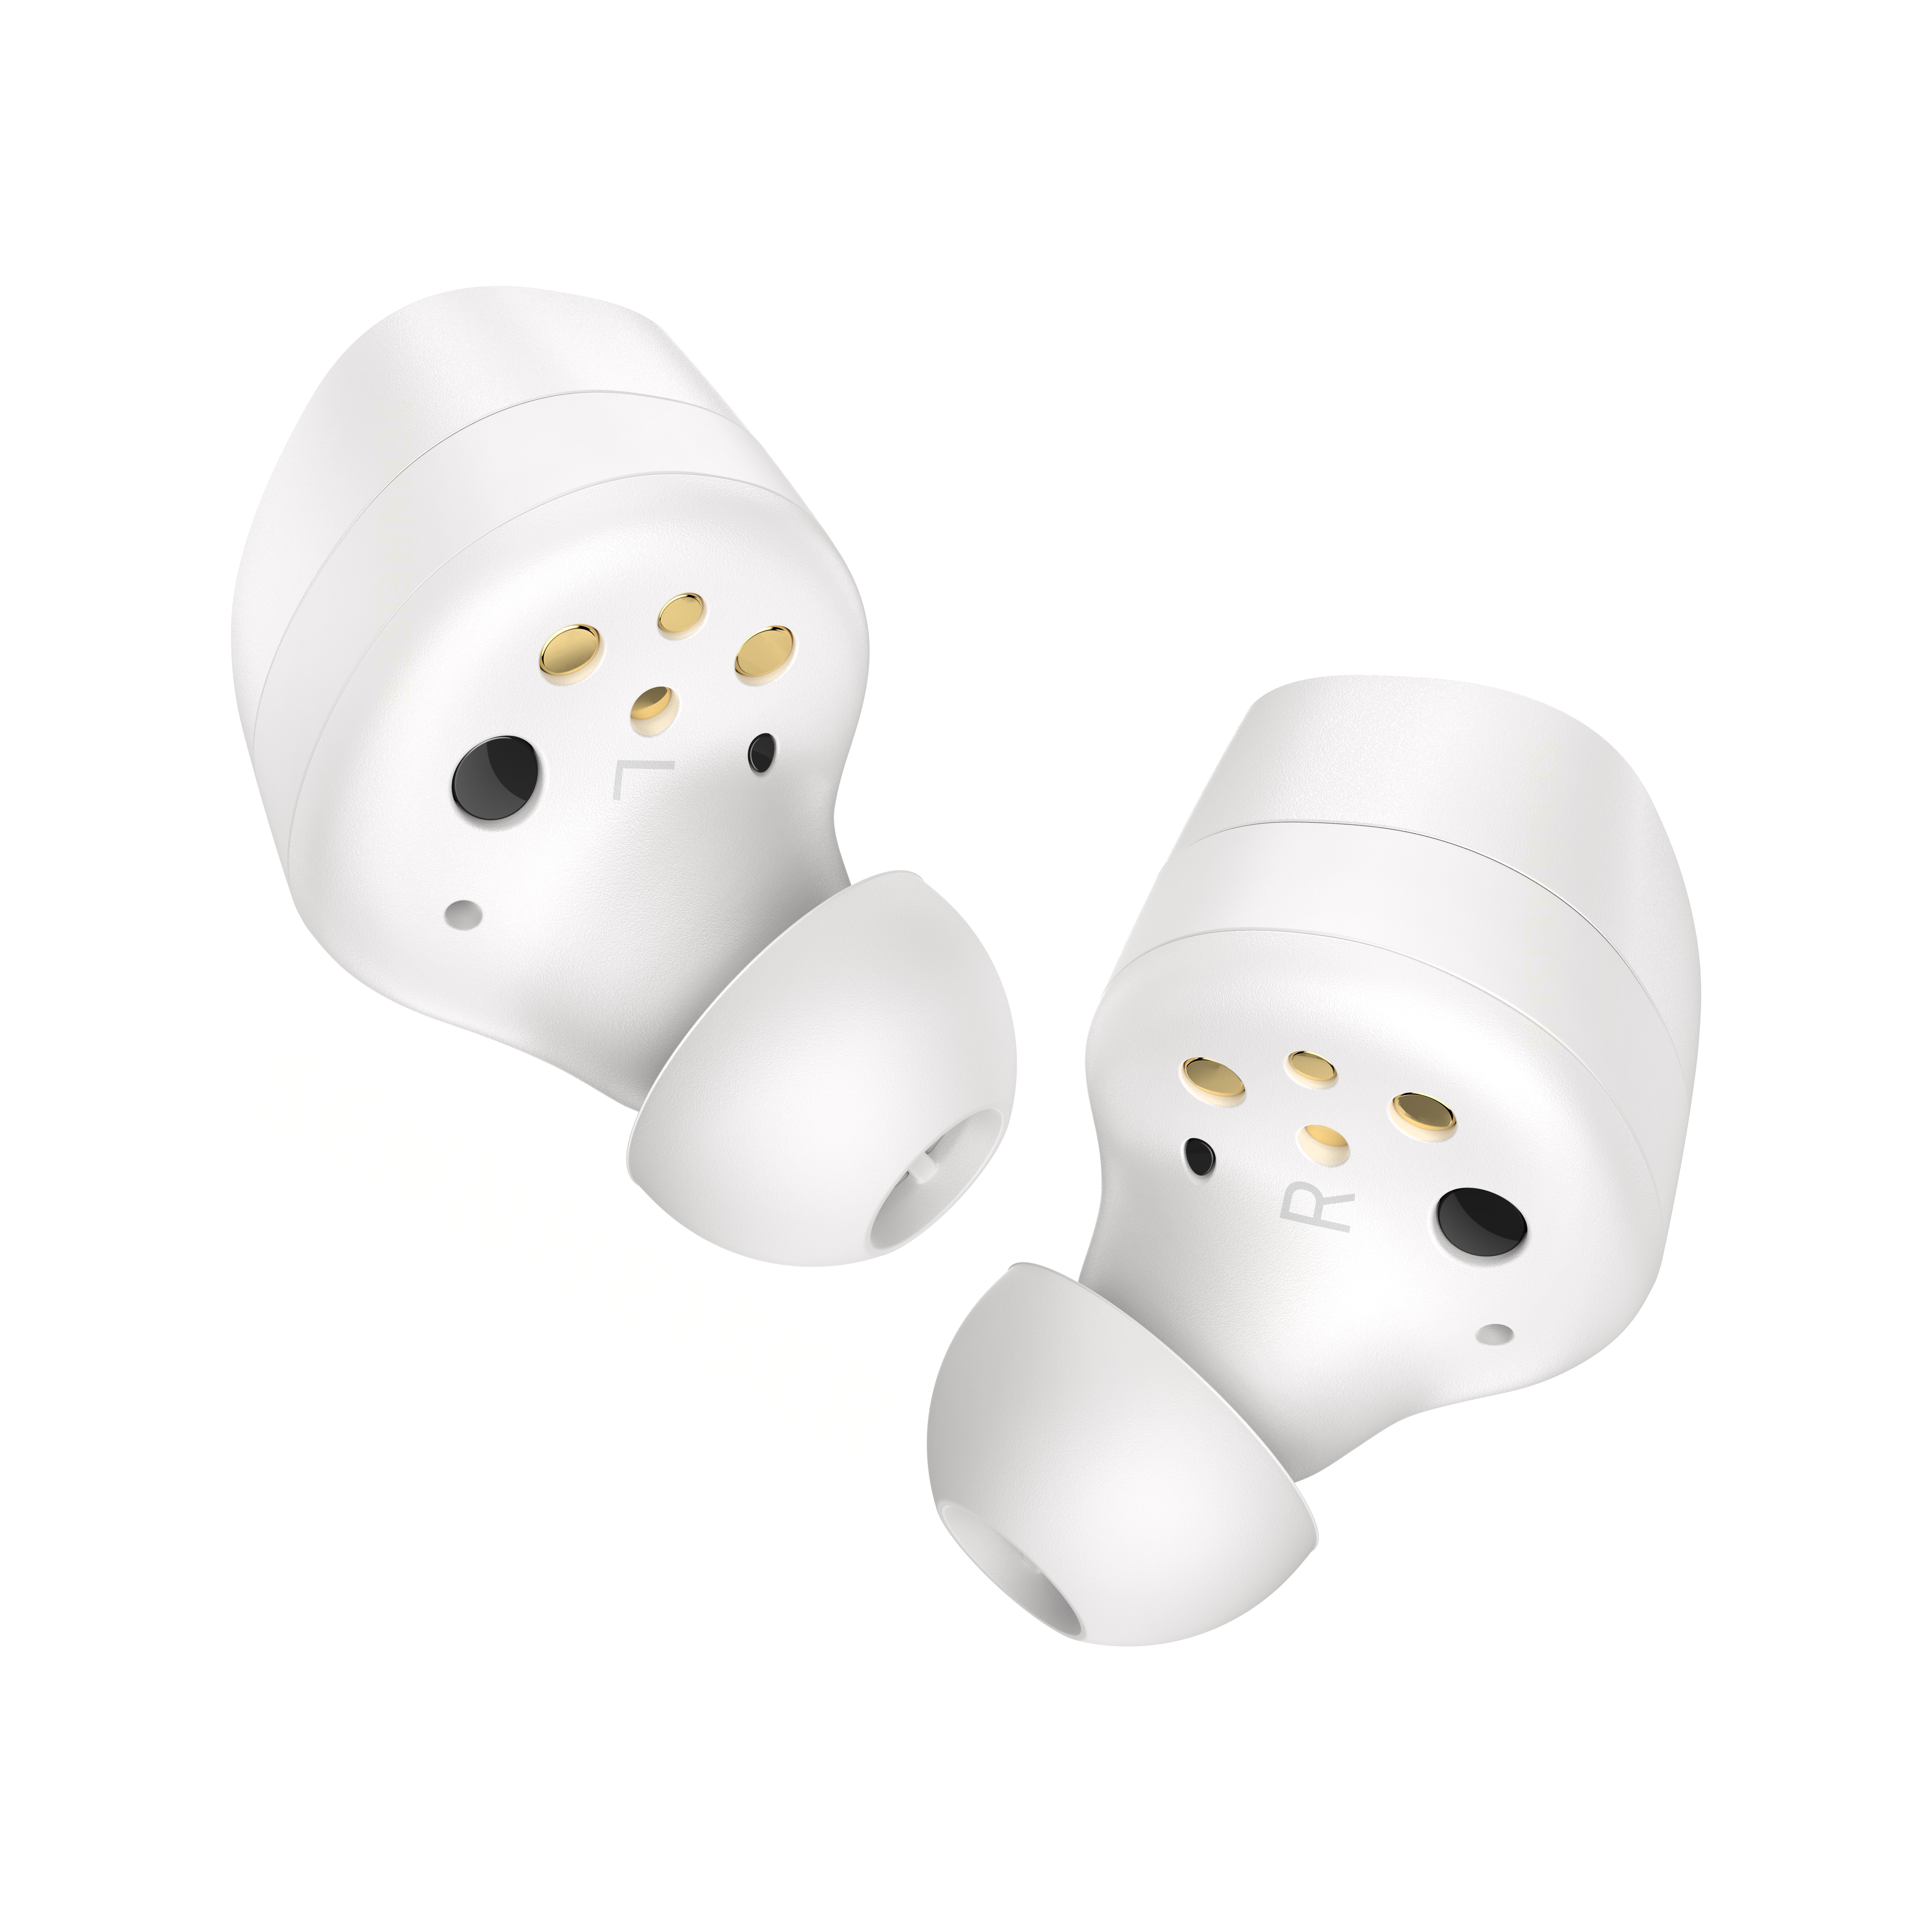 Buy Sennheiser   MOMENTUM 3 真無線藍芽耳機白色 for HKD